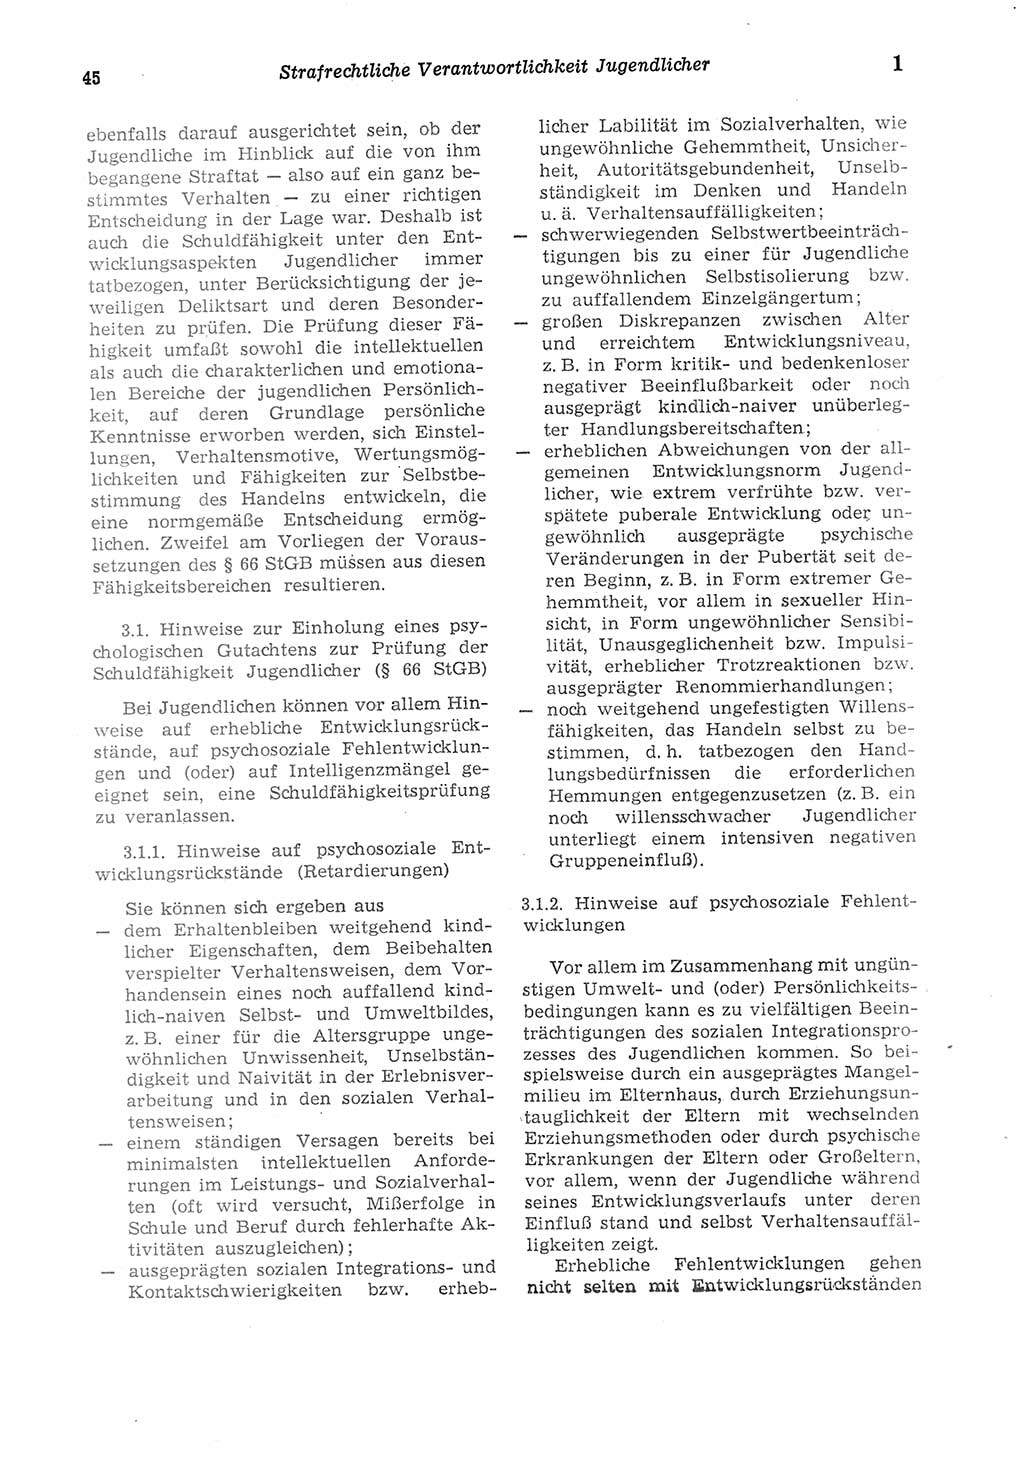 Strafgesetzbuch (StGB) der Deutschen Demokratischen Republik (DDR) und angrenzende Gesetze und Bestimmungen 1975, Seite 45 (StGB DDR Ges. Best. 1975, S. 45)